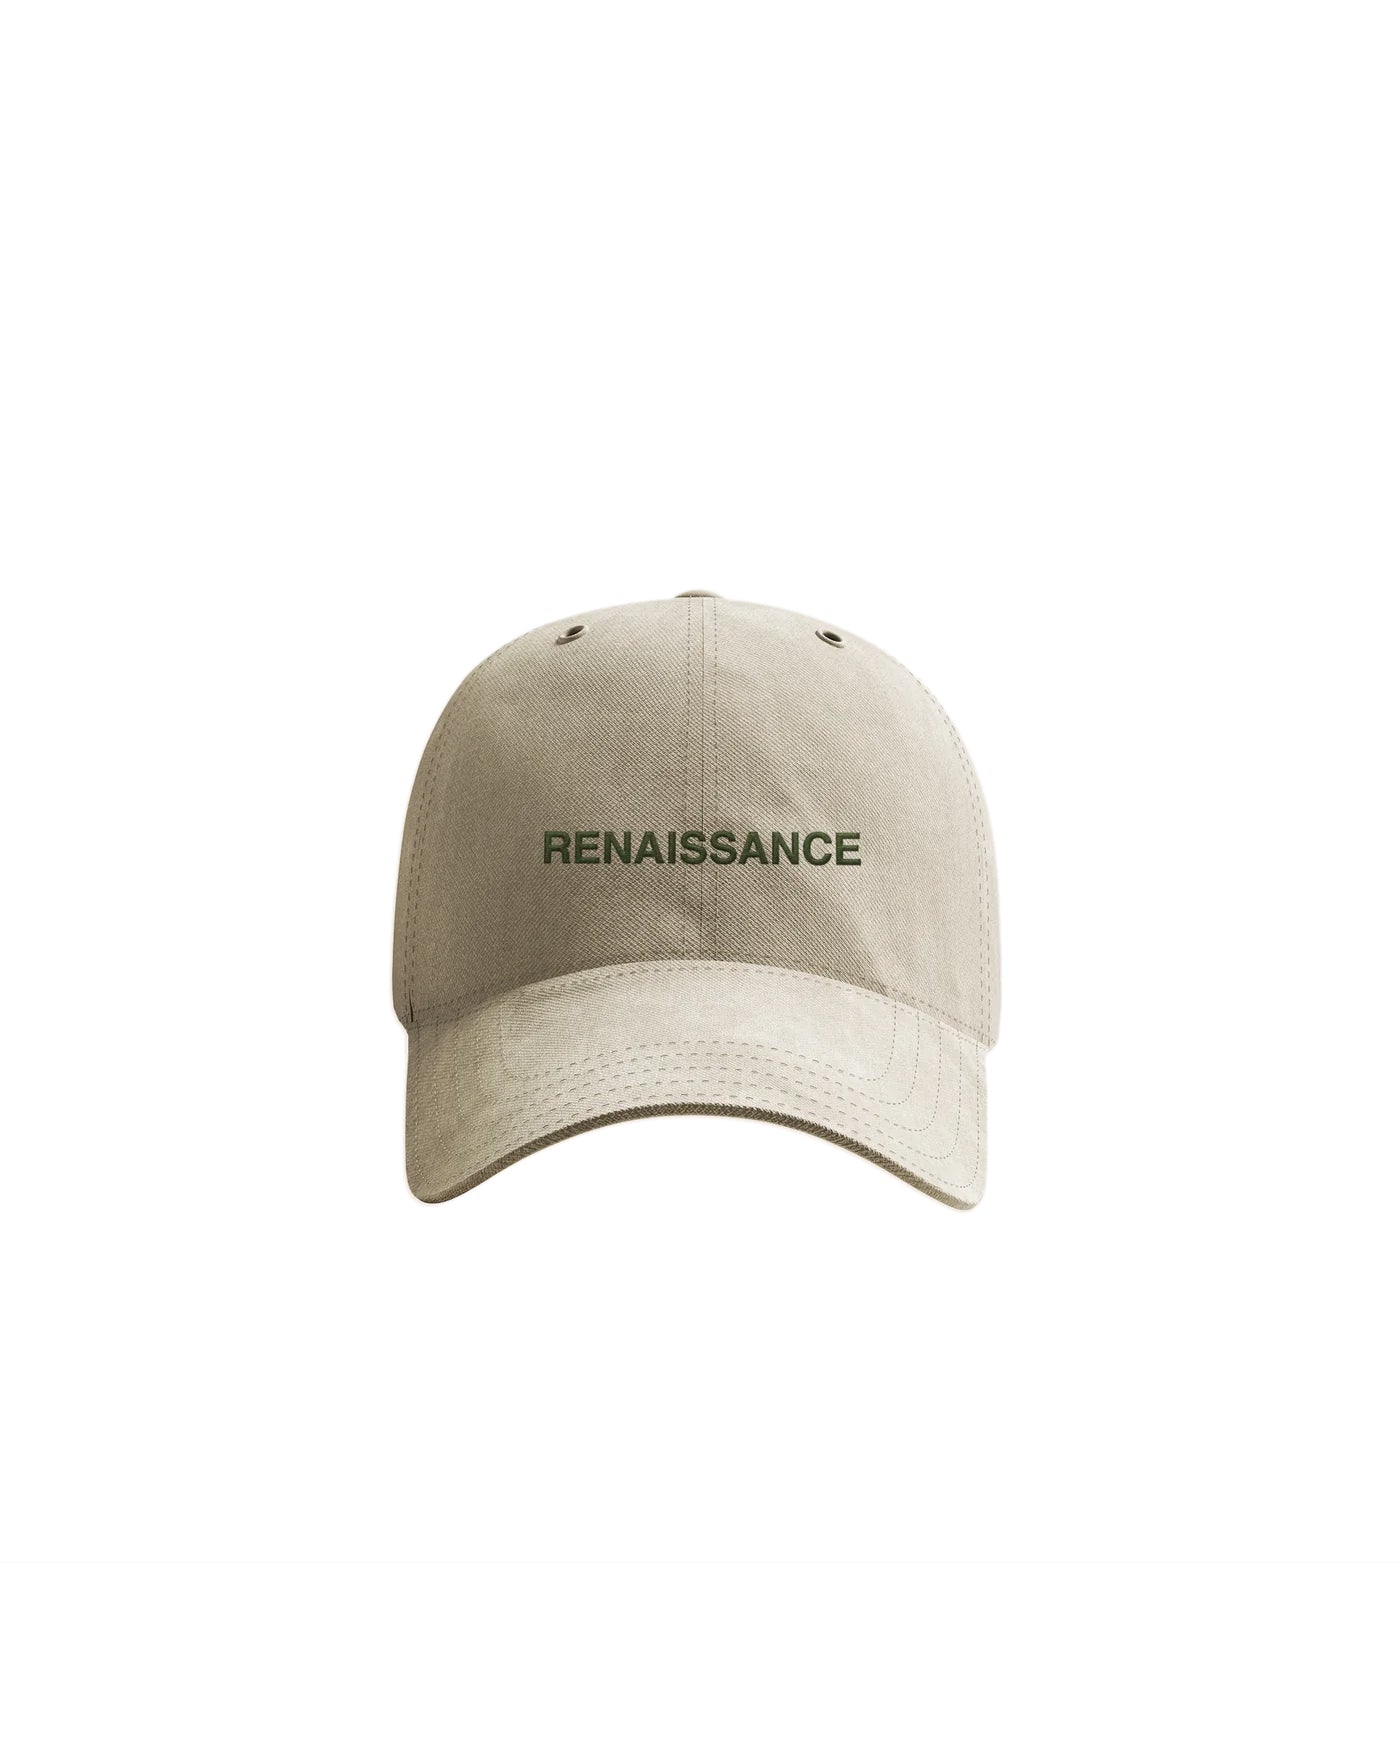 ルネッサンスのお父さんの帽子